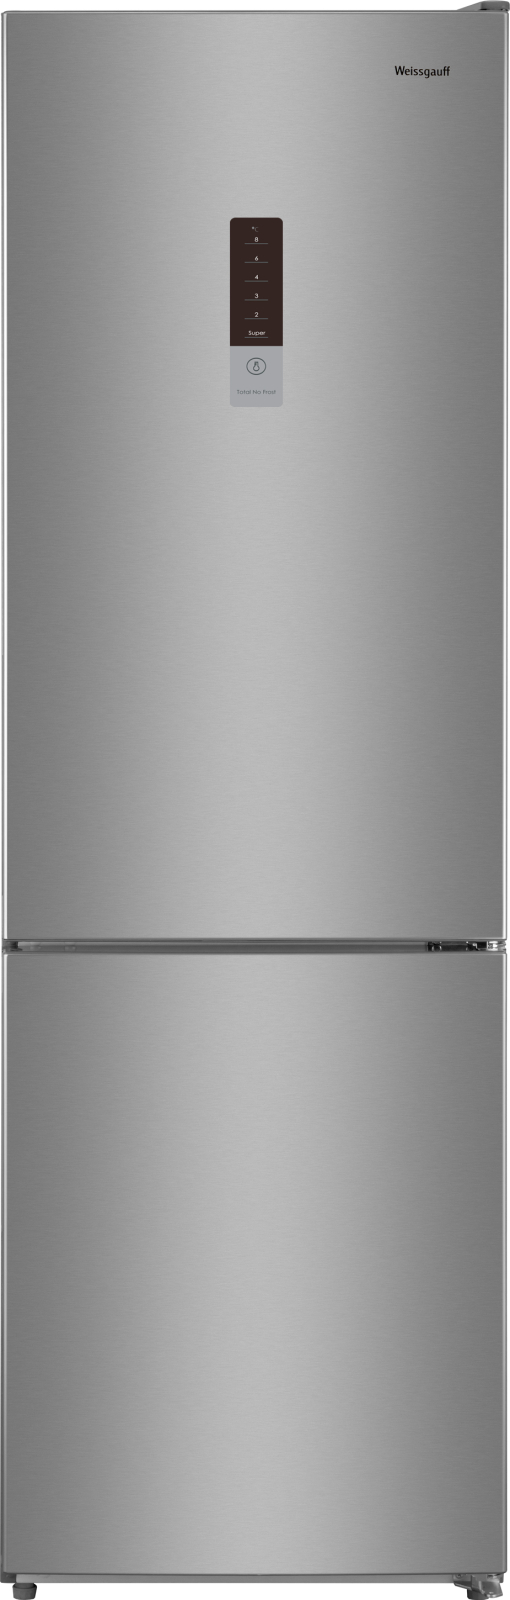 Холодильник Weissgauff WRK 190 DX серебристый двухкамерный холодильник weissgauff wrk 190 w lowfrost